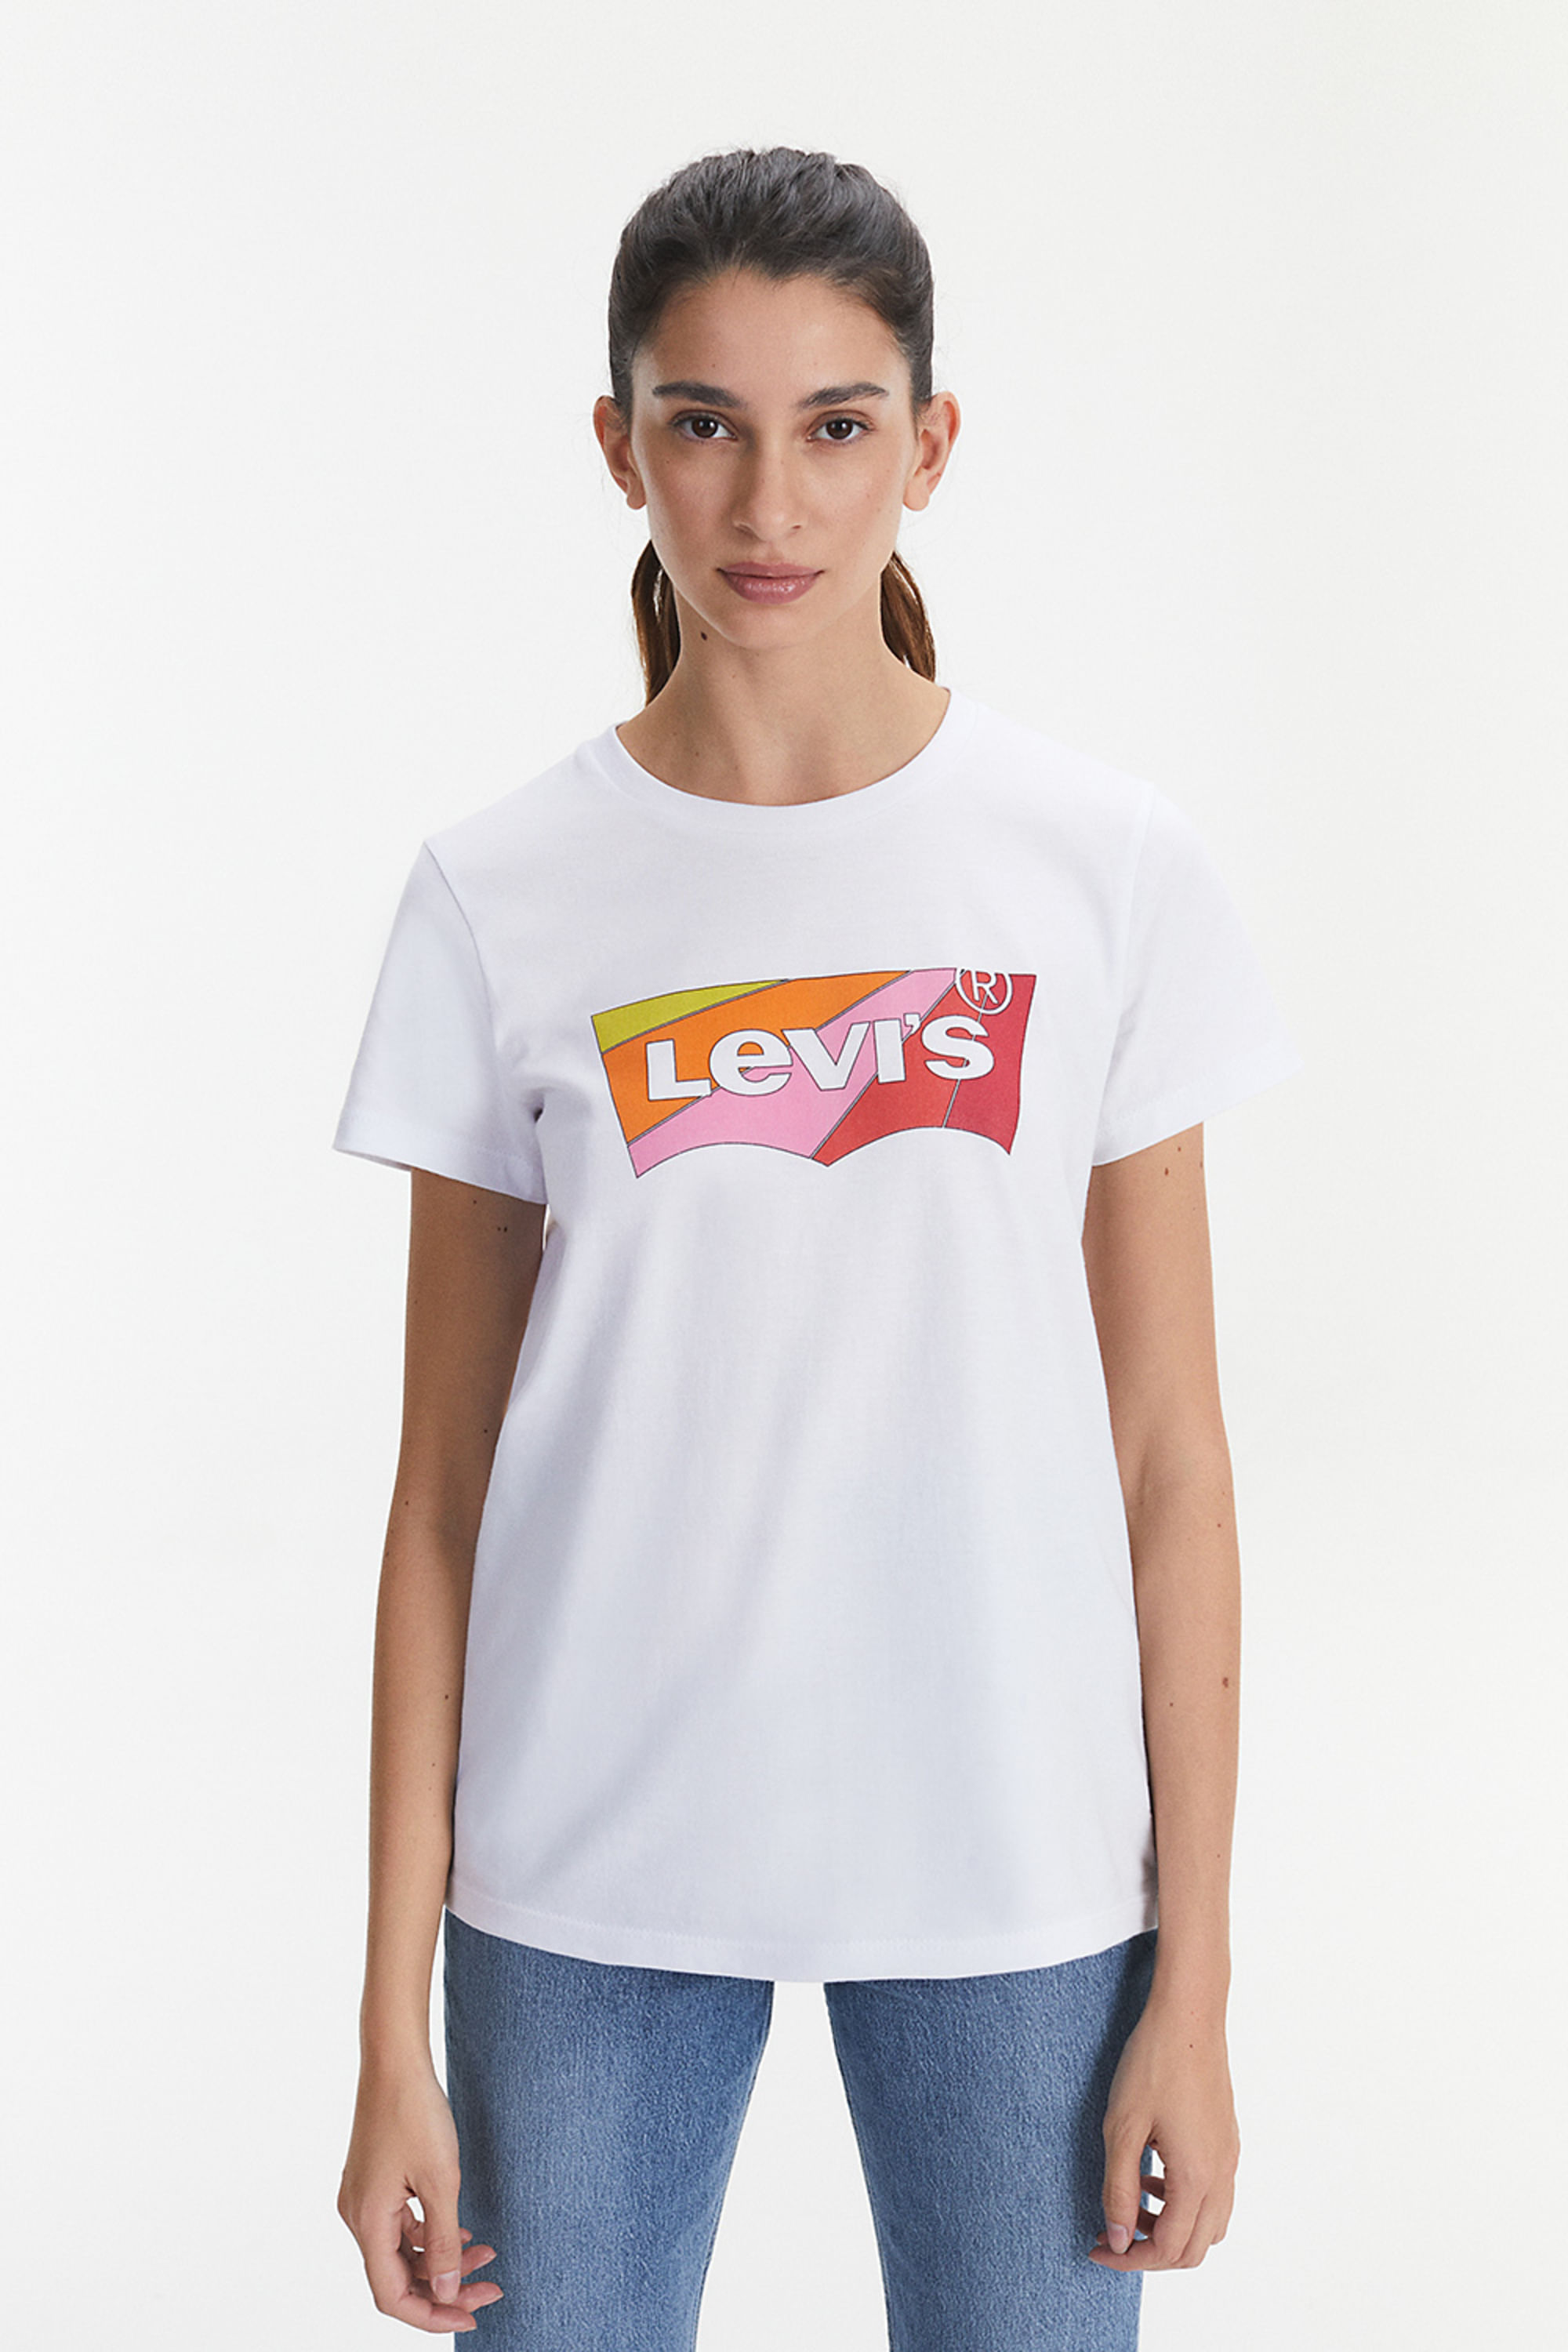 - Levi's ® Argentina